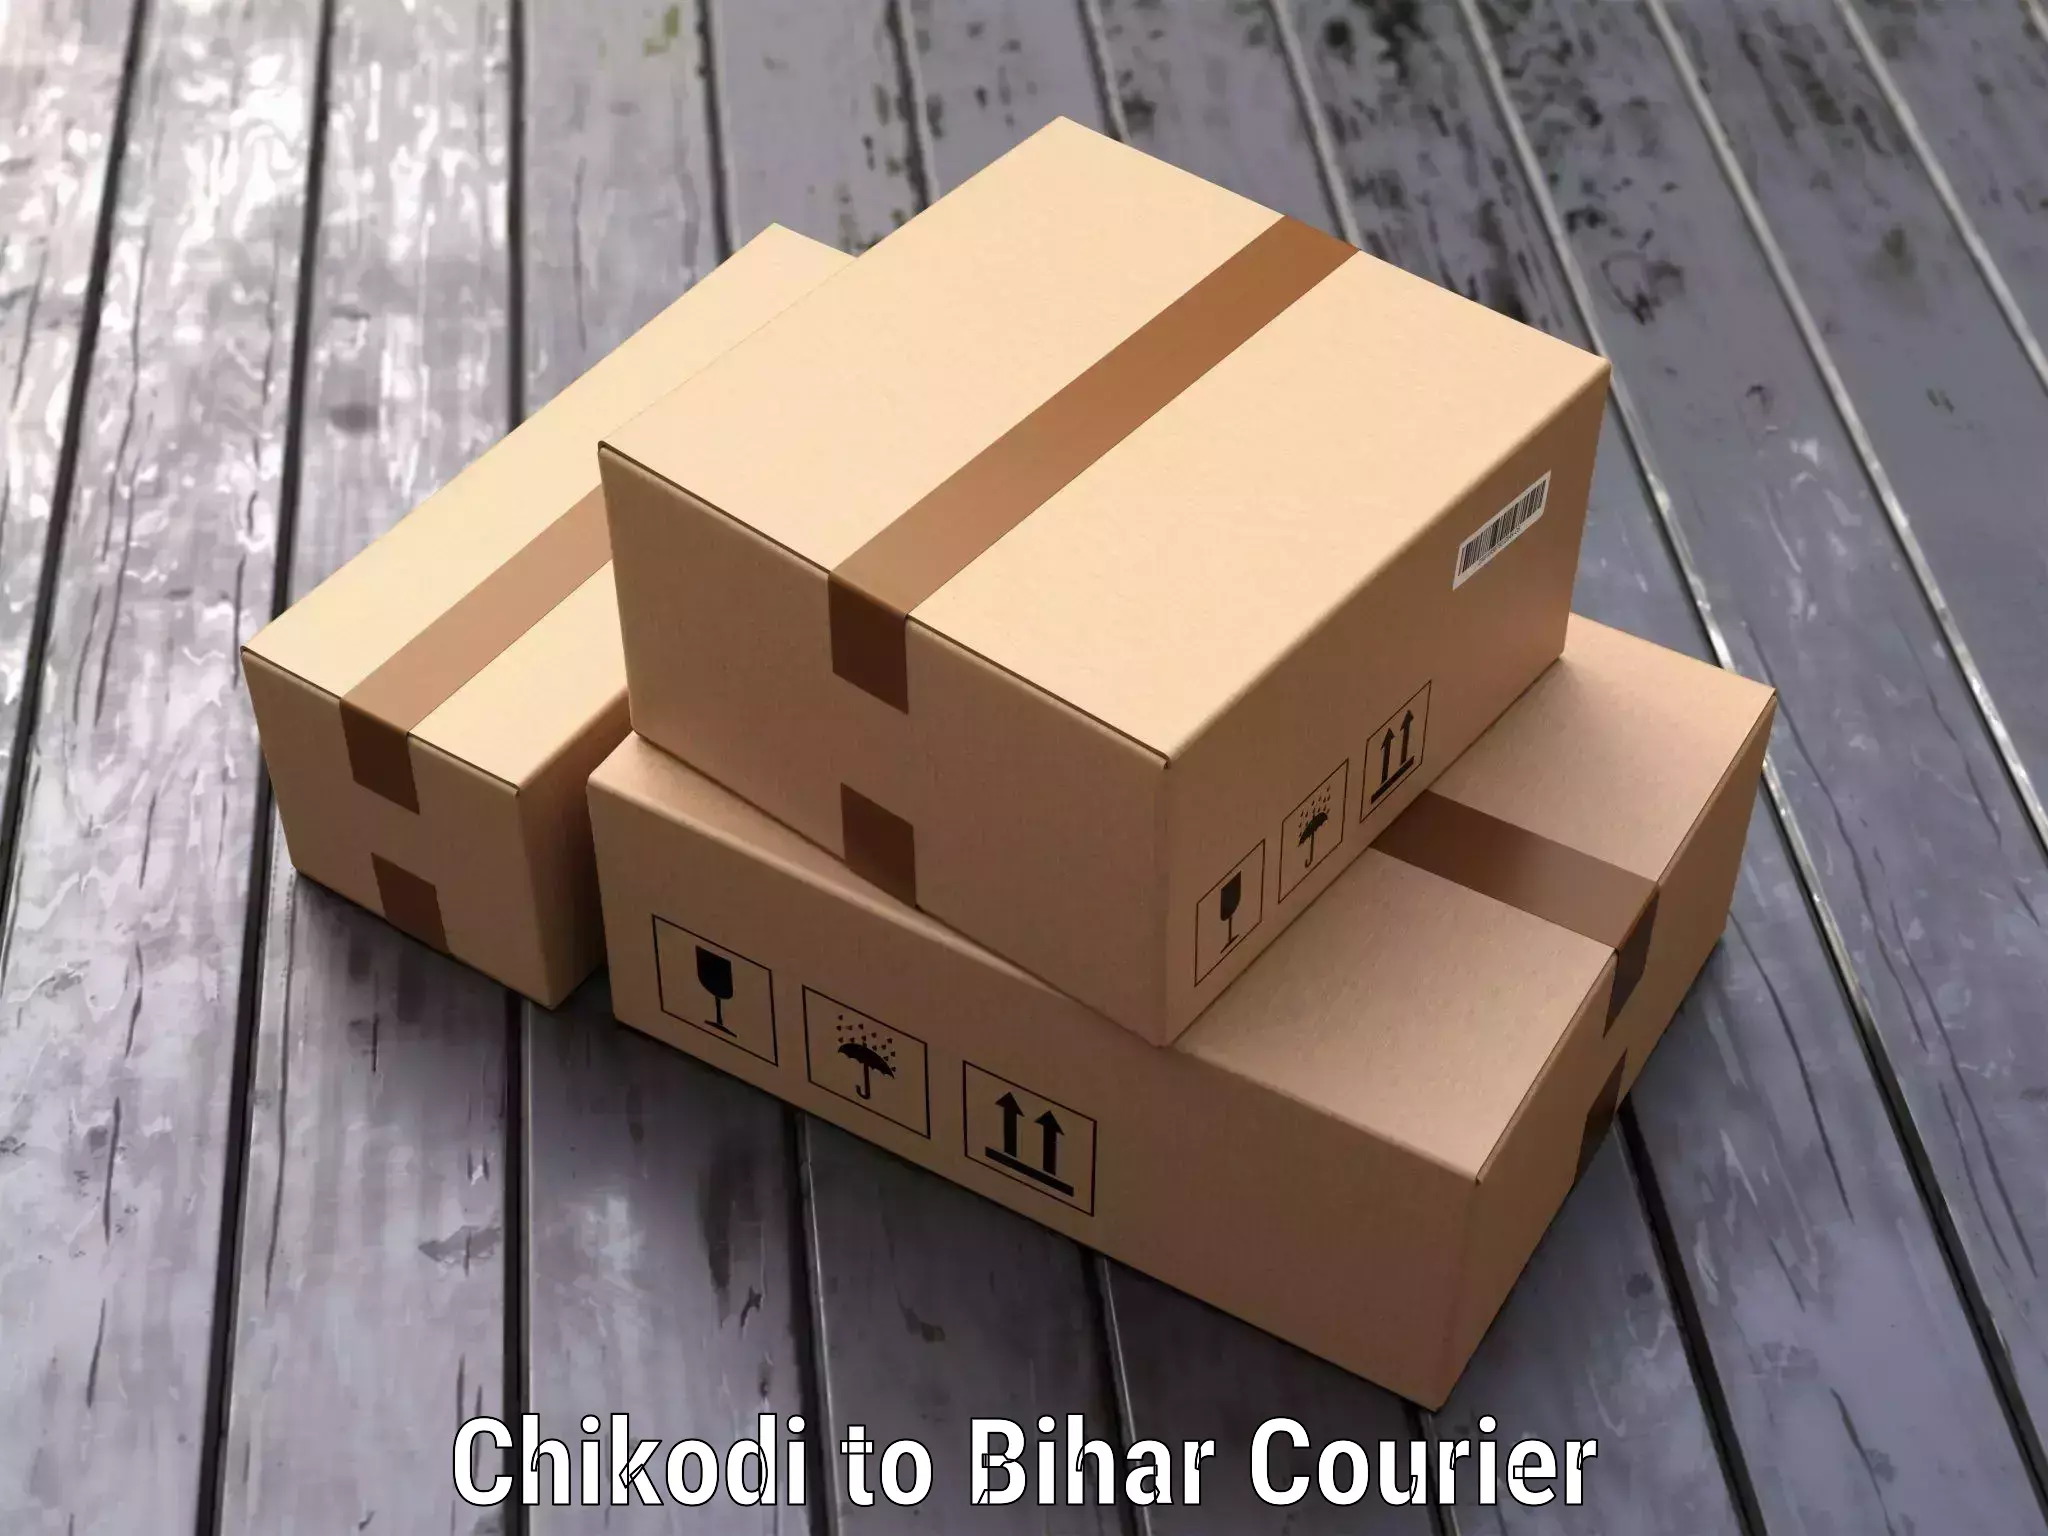 Door-to-door baggage service Chikodi to Bihar